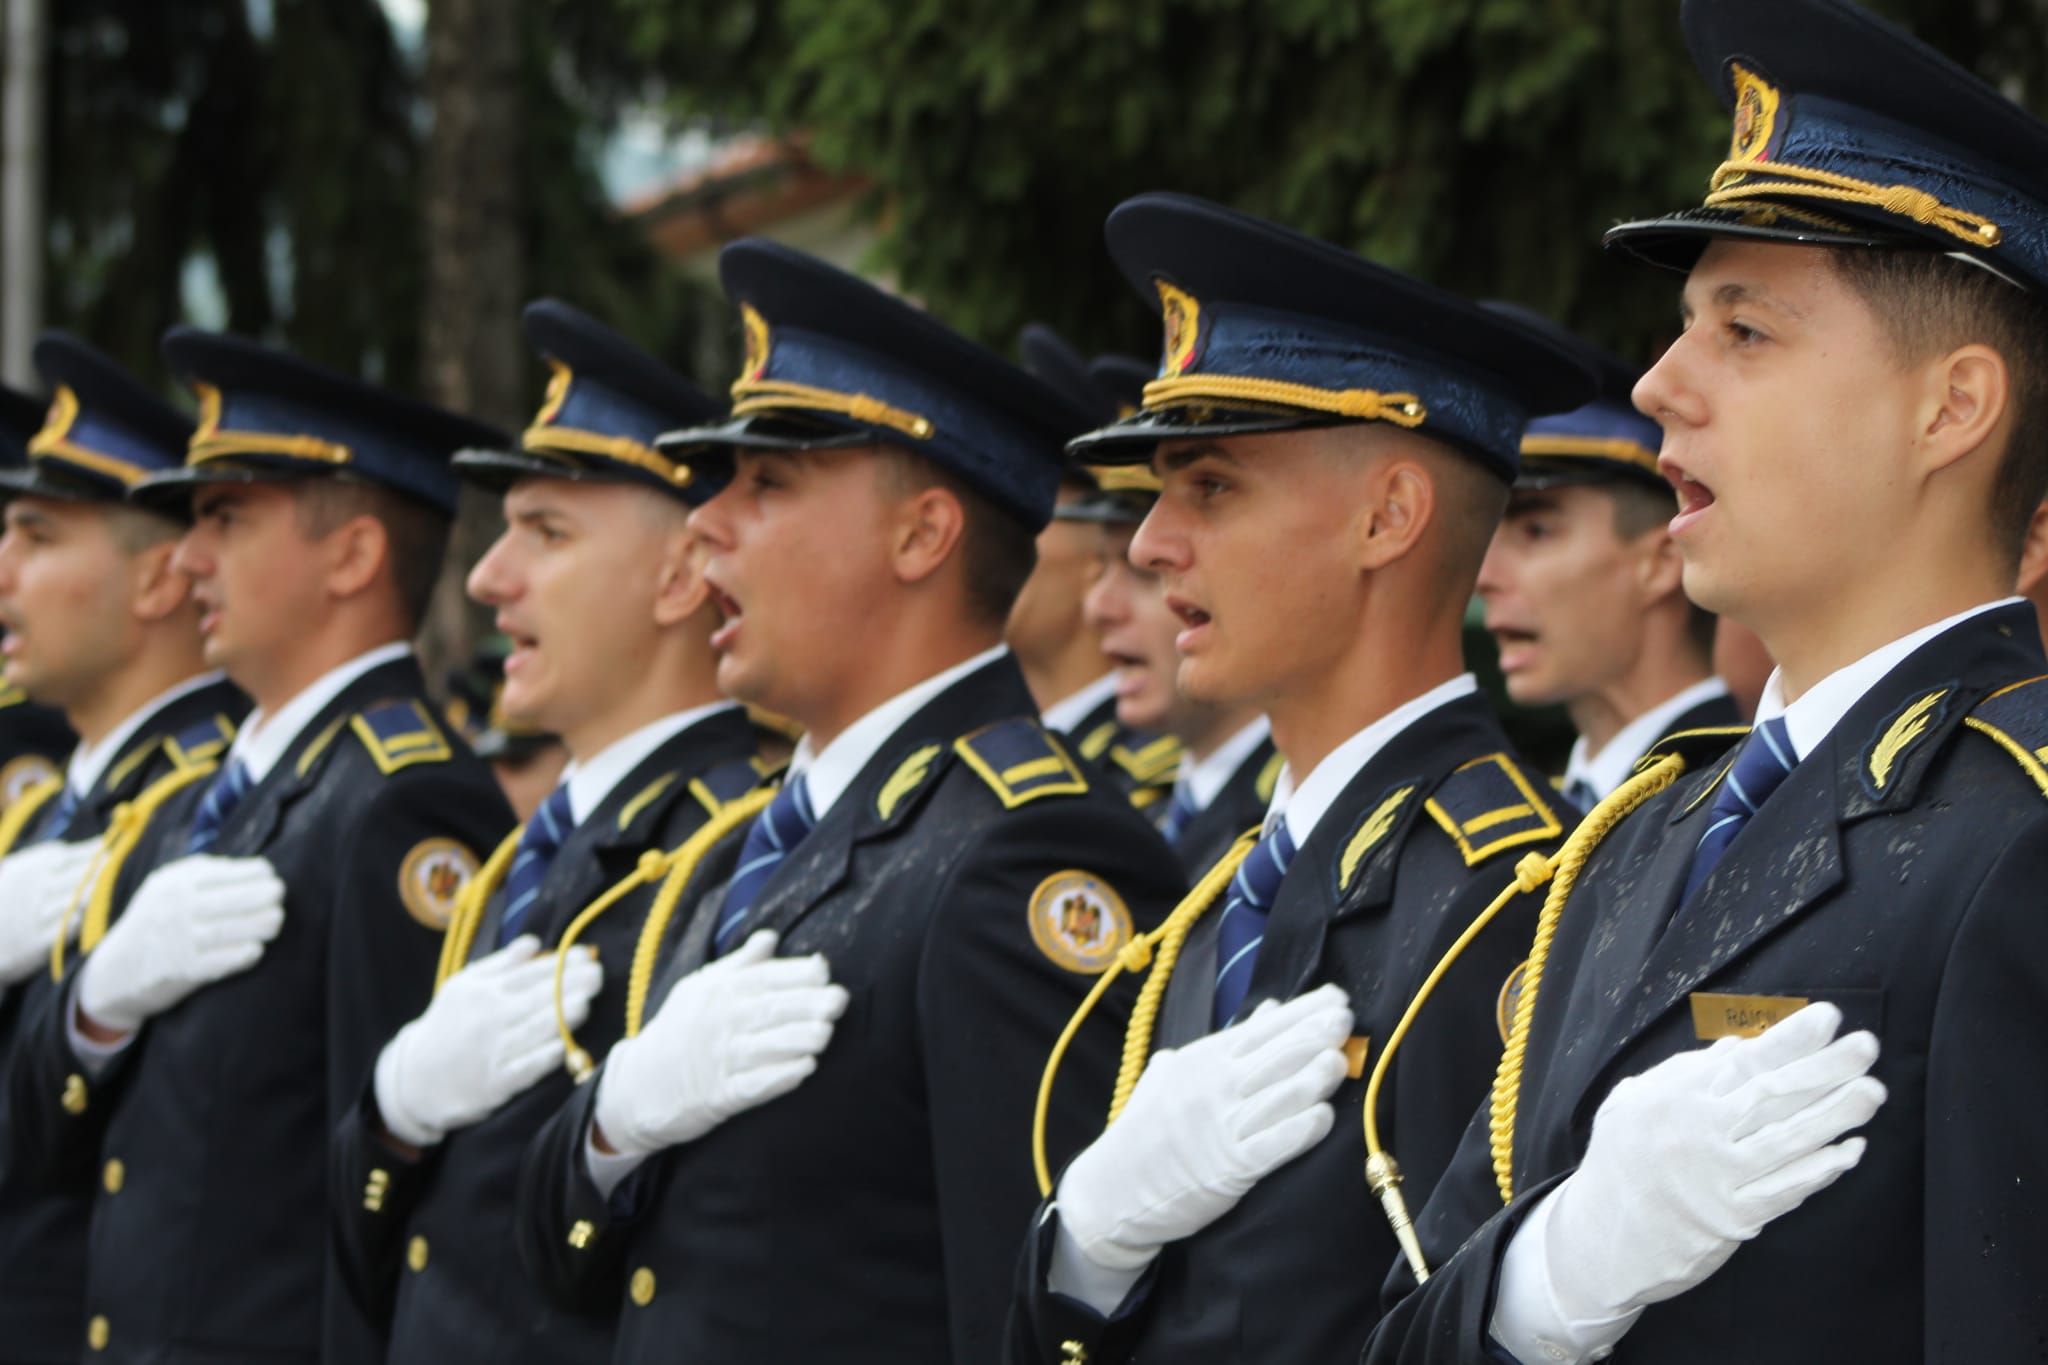 Ordonanța austerității prăbușește poliția penitenciară și face inevitabilă condamnarea României la CEDO. Sindicatele din penitenciare cer Guvernului să nu-i transforme pe polițiștii de penitenciare în infractori.